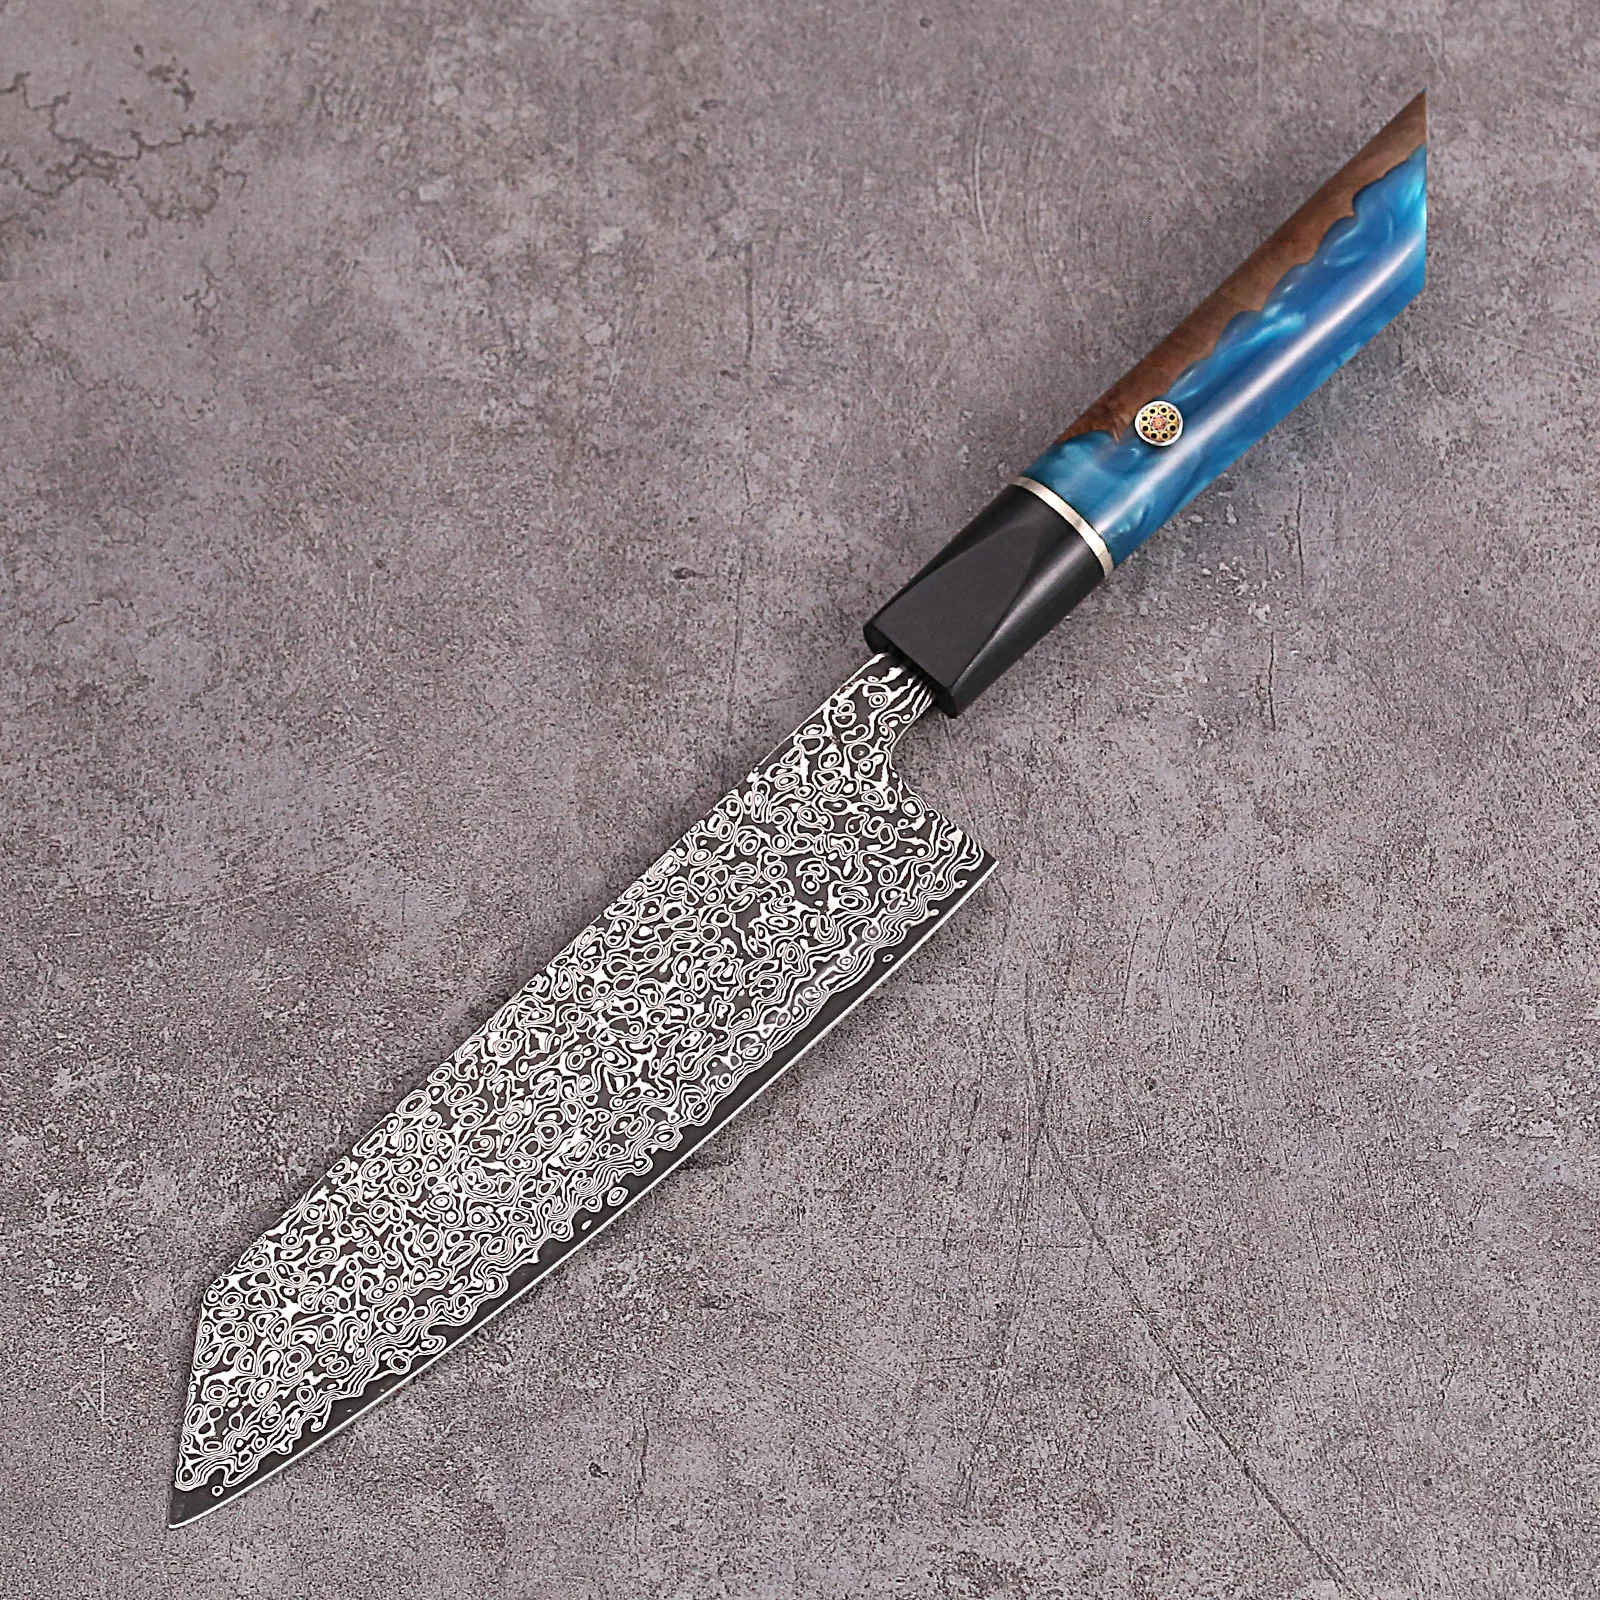 Personalized Japanese Kiritsuke Knife for Gift Giving